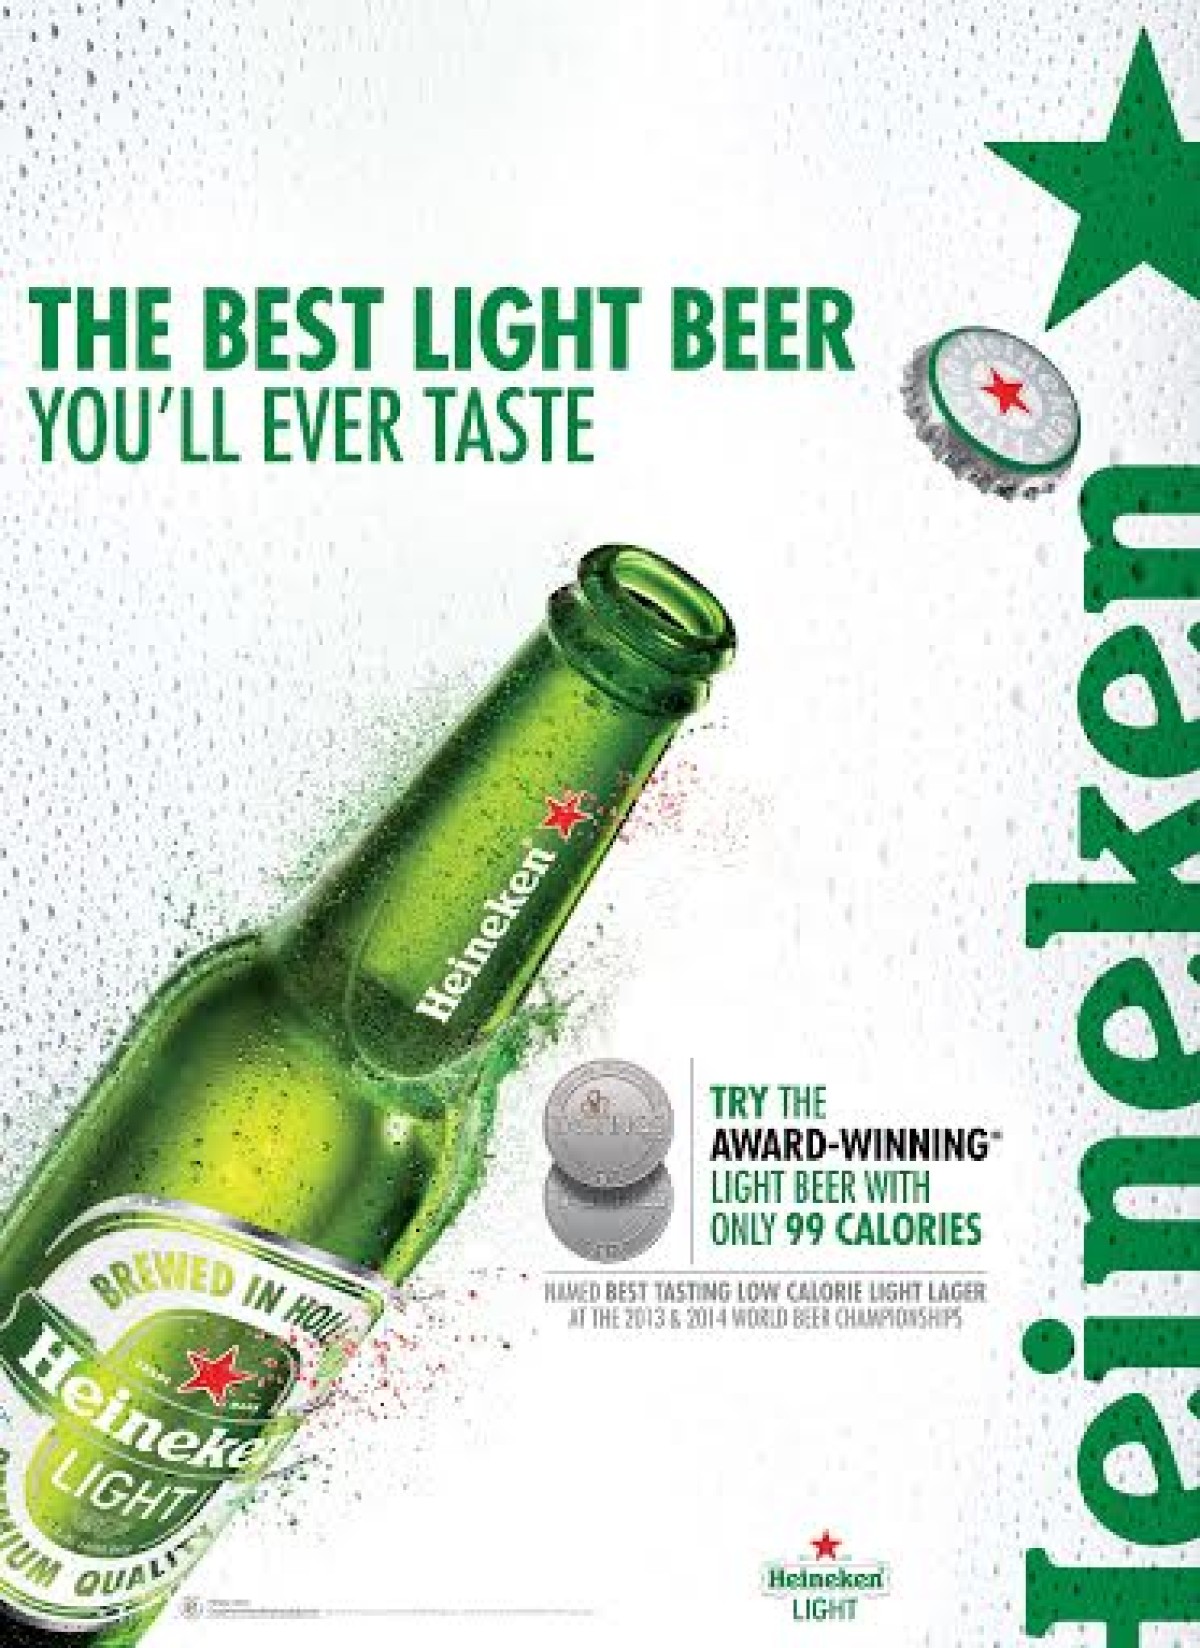 Heineken Light To Expand Reach Through